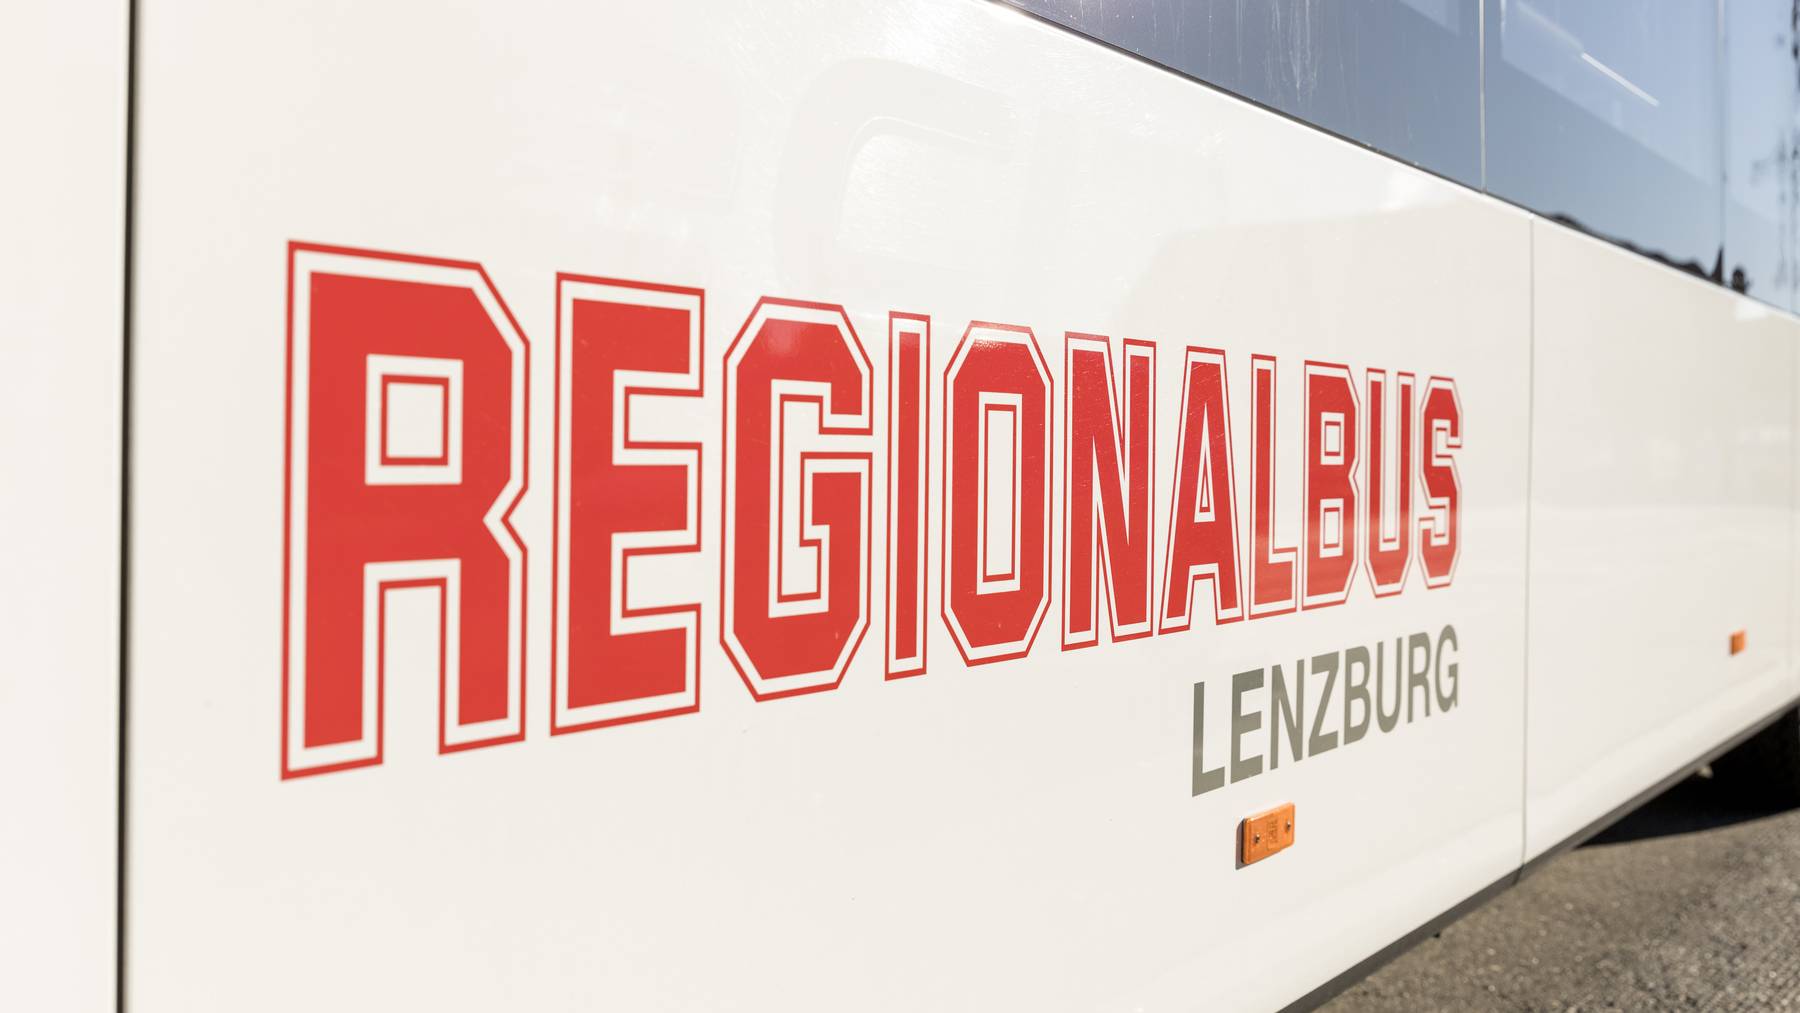 Regionalbus Lenzburg